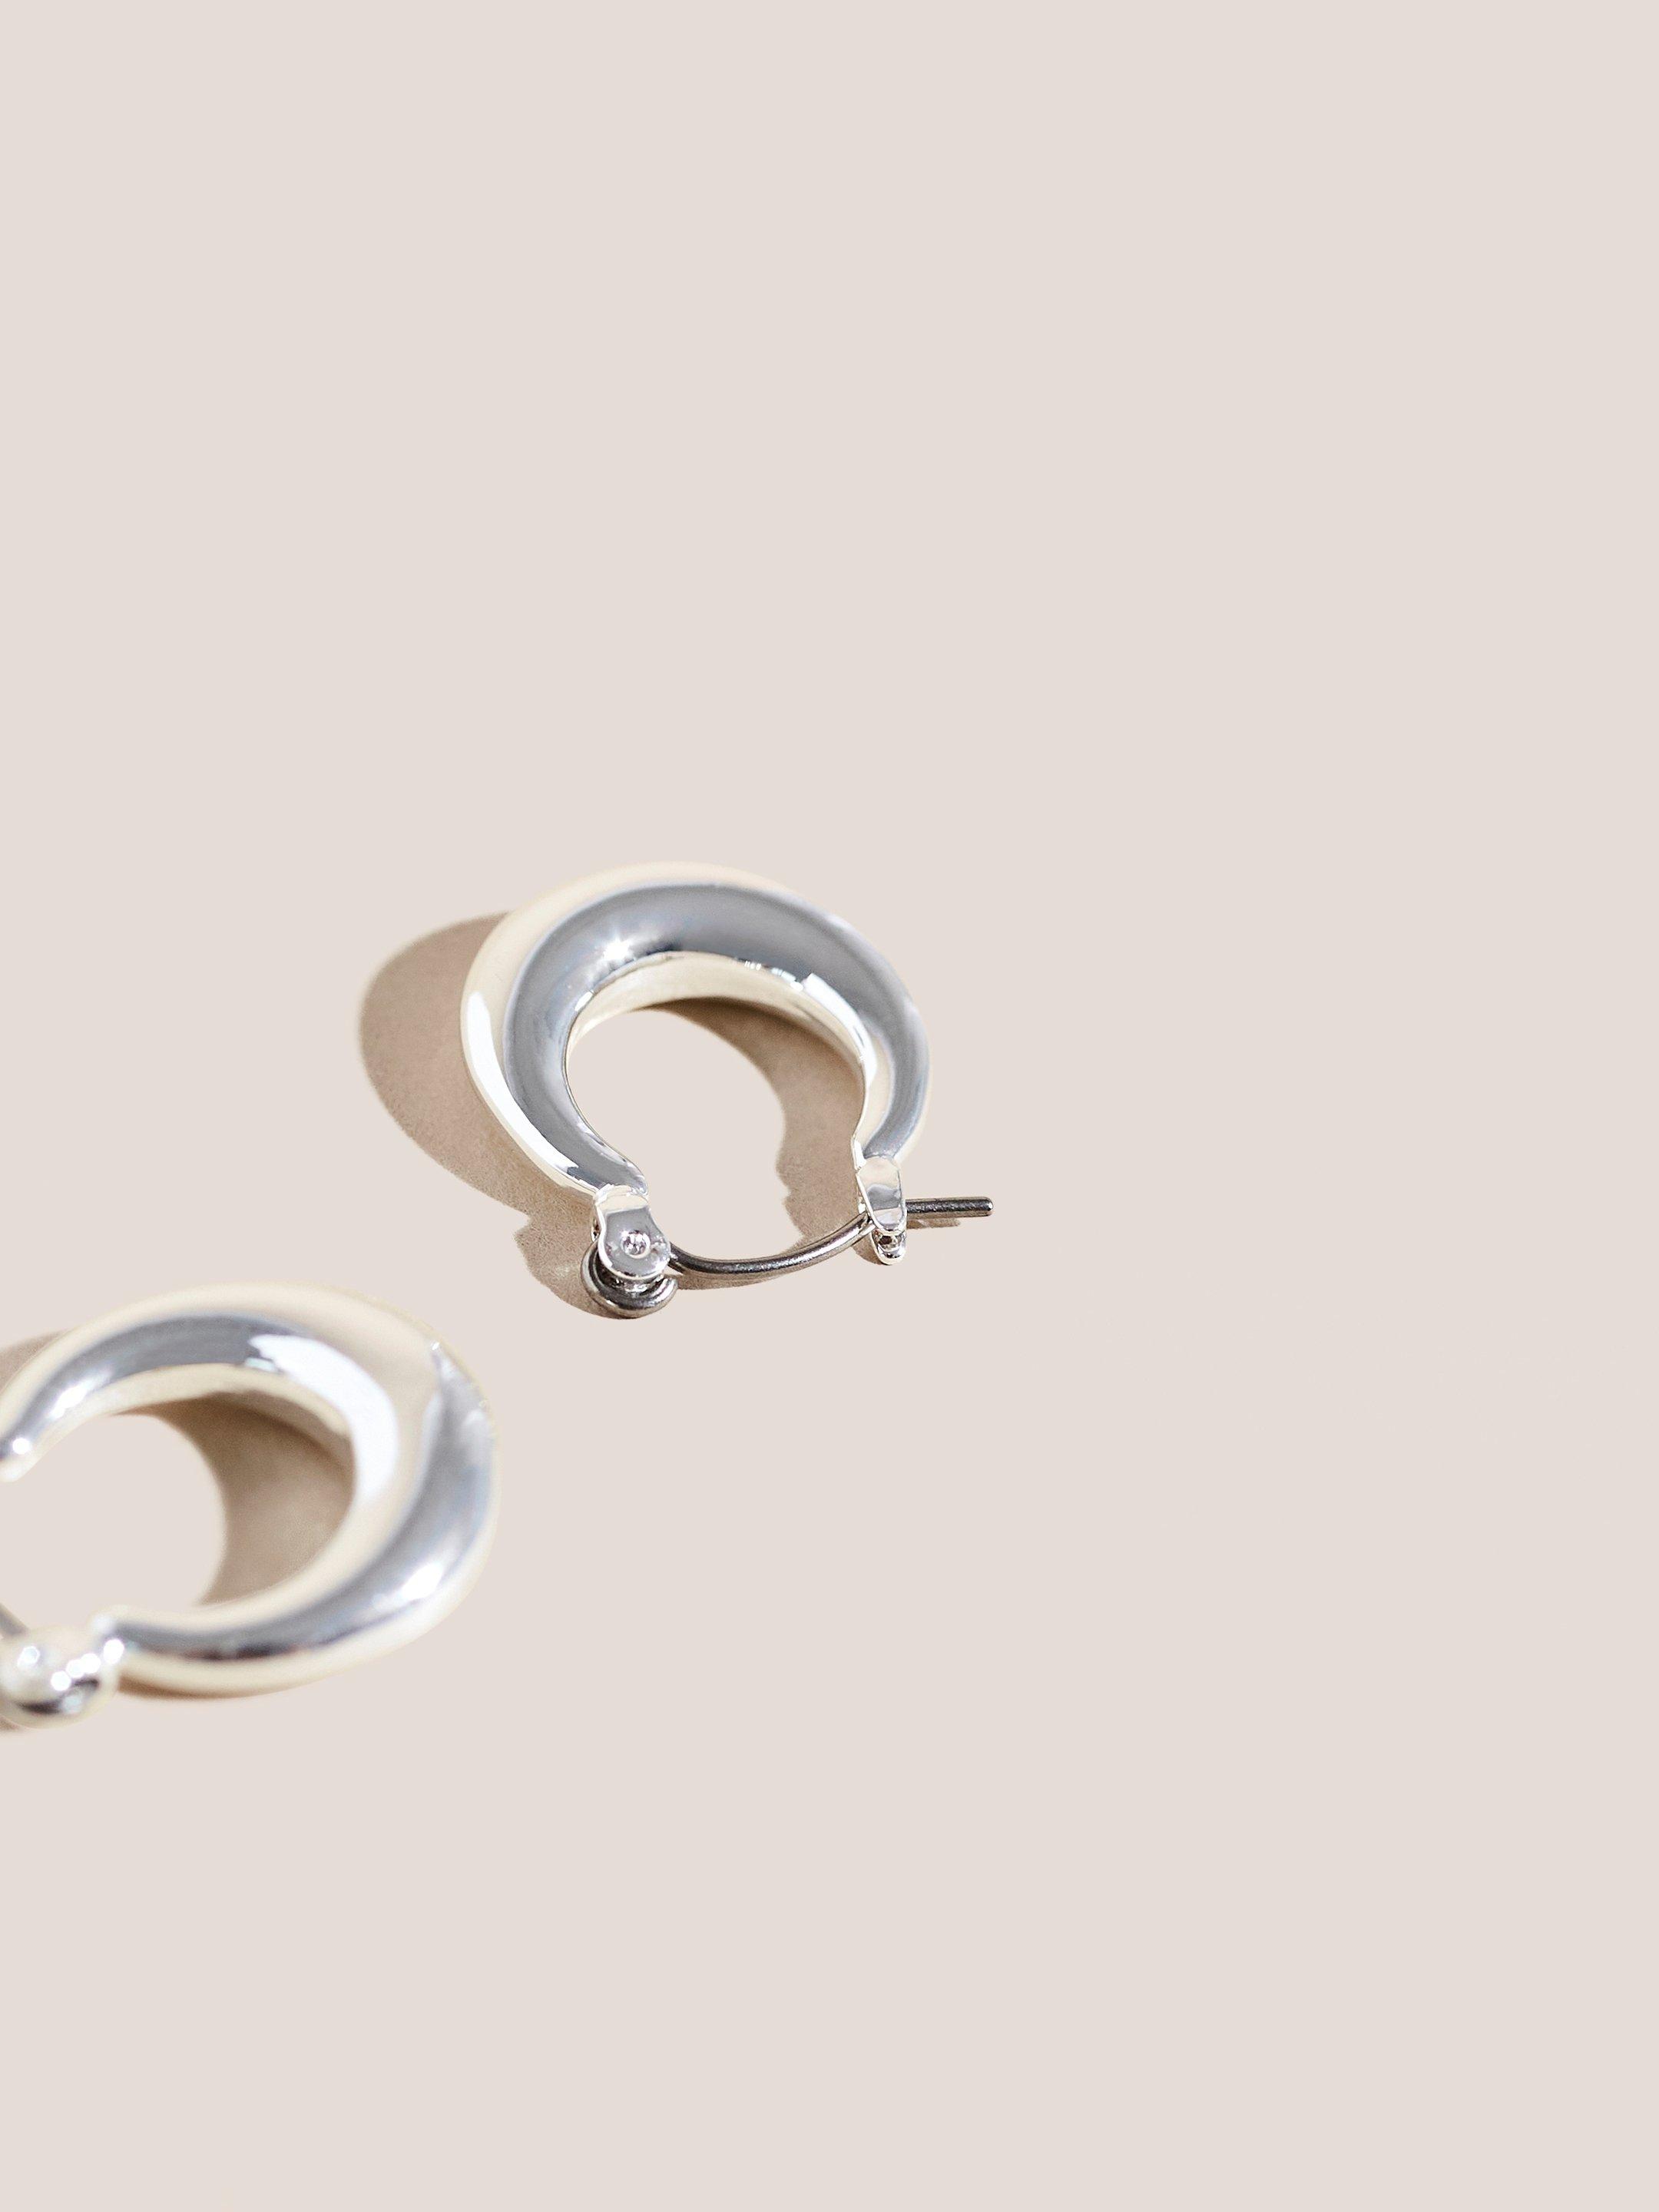 Silver Plated Hoop Earrings in SLV TN MET - FLAT BACK